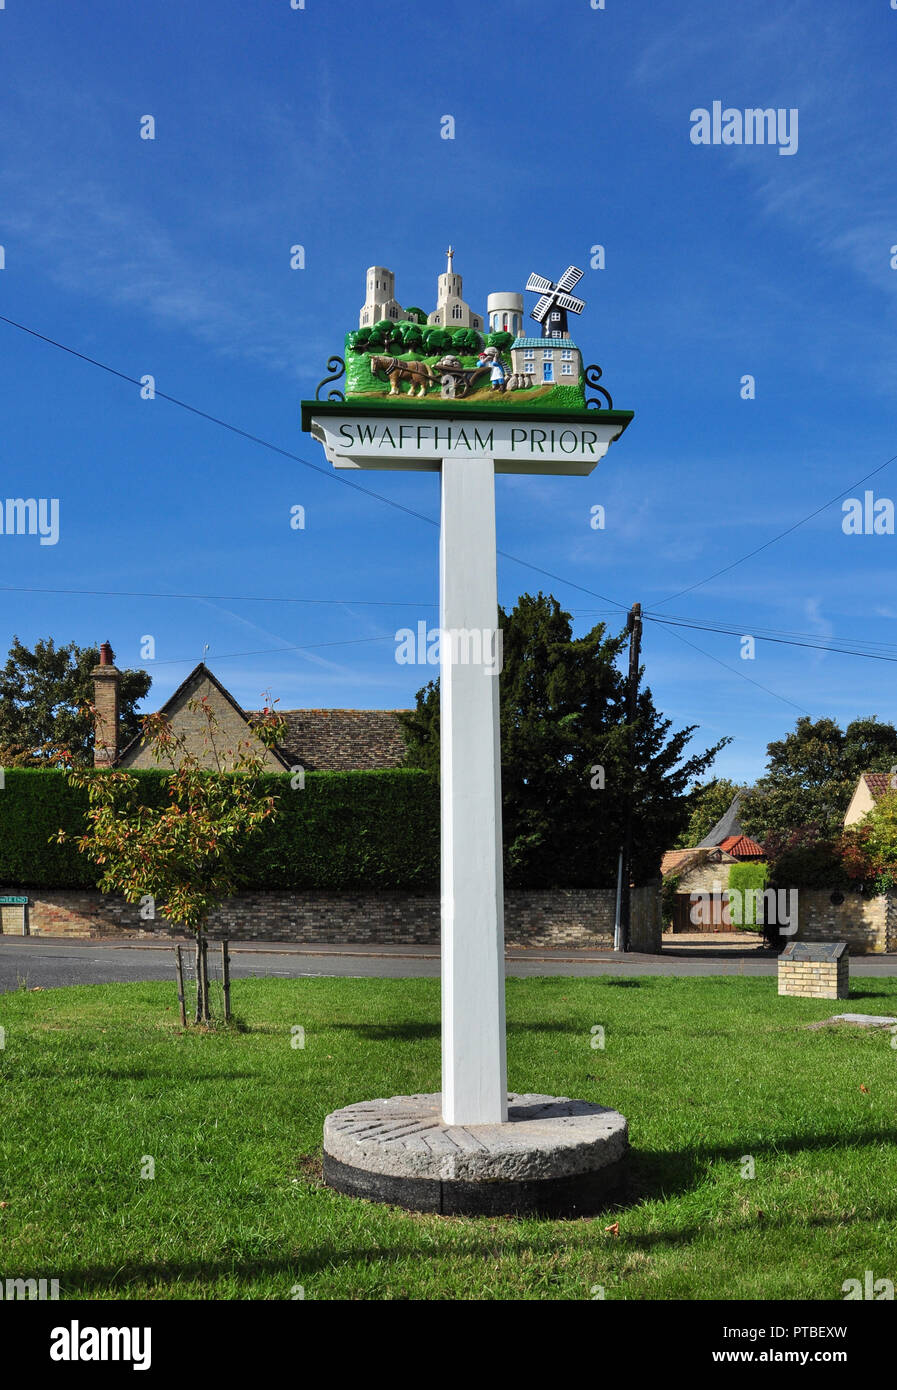 Village sign, Swaffham Prior, Cambridgeshire, England, UK Stock Photo